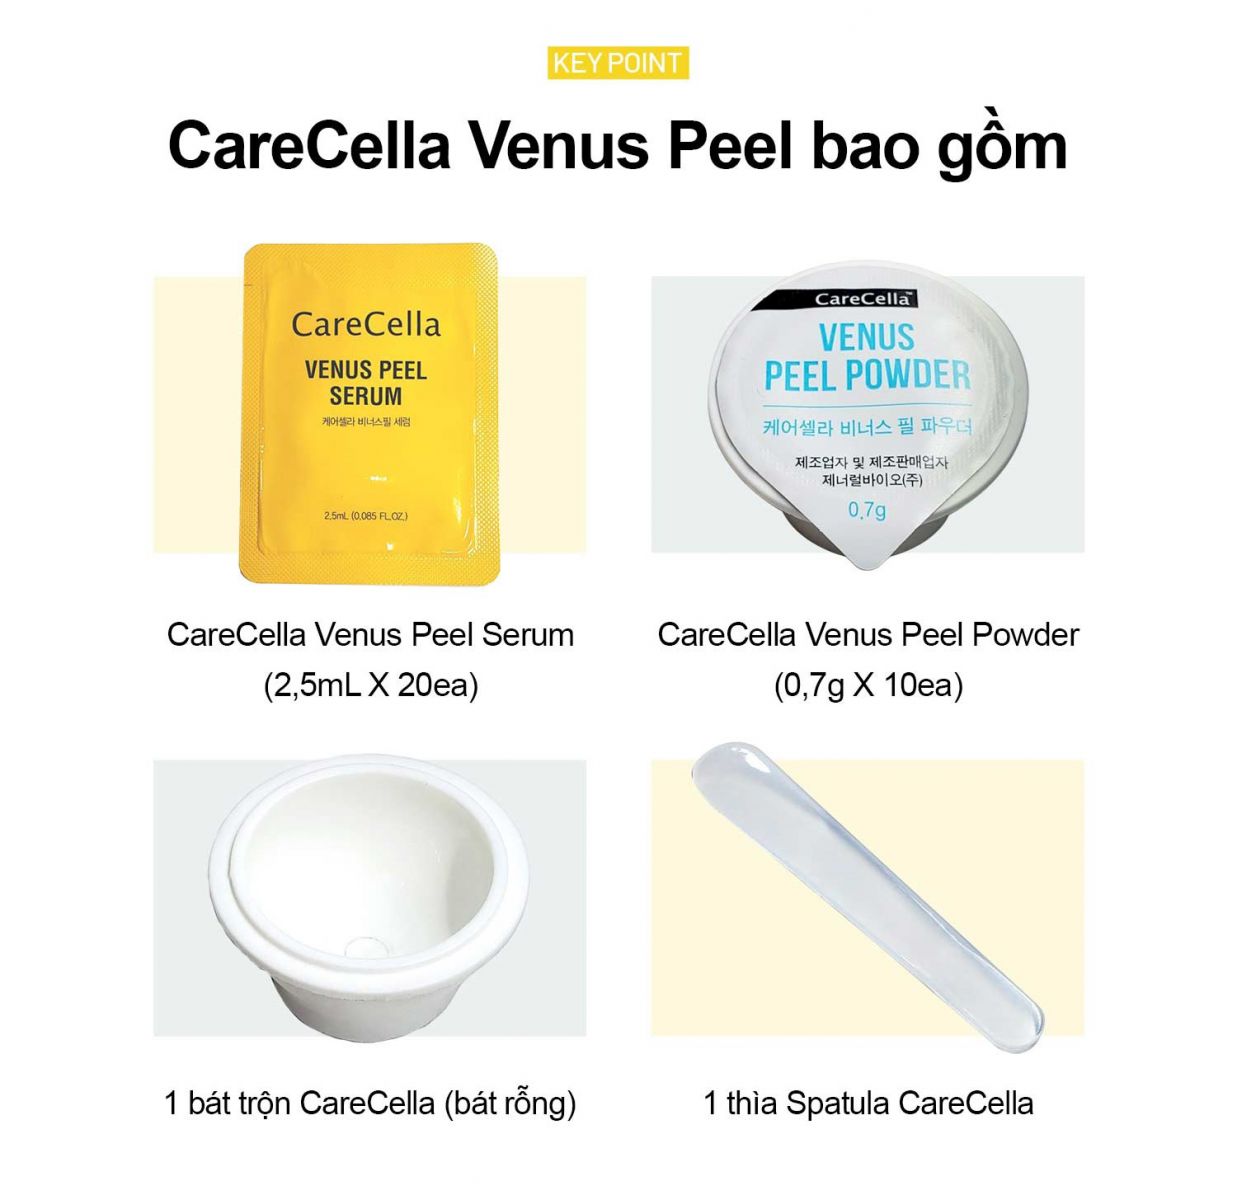 Bộ sản phẩm CareCella Venus Peel Powder & Serum